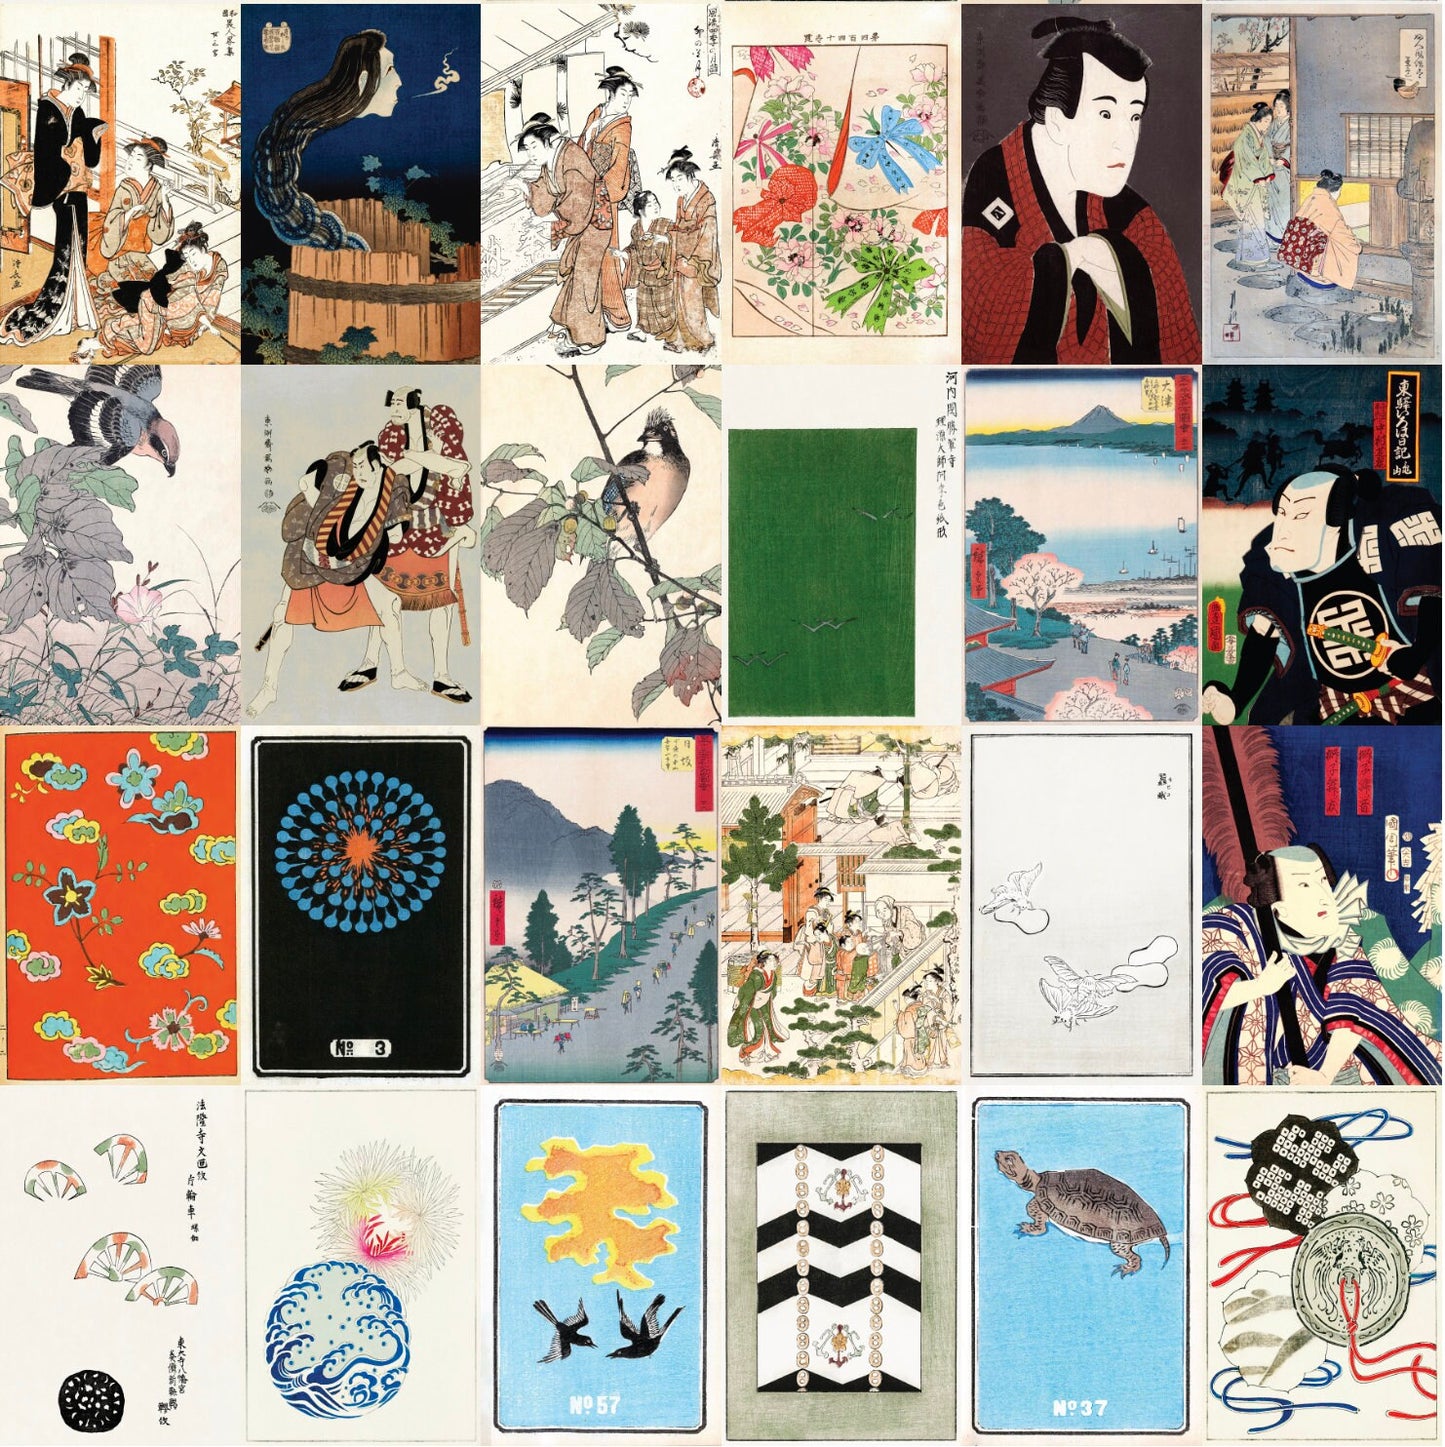 Japanese Ukiyo-e Woodblock Print 4"x6" Collage Kit Set 6 [110 Images]